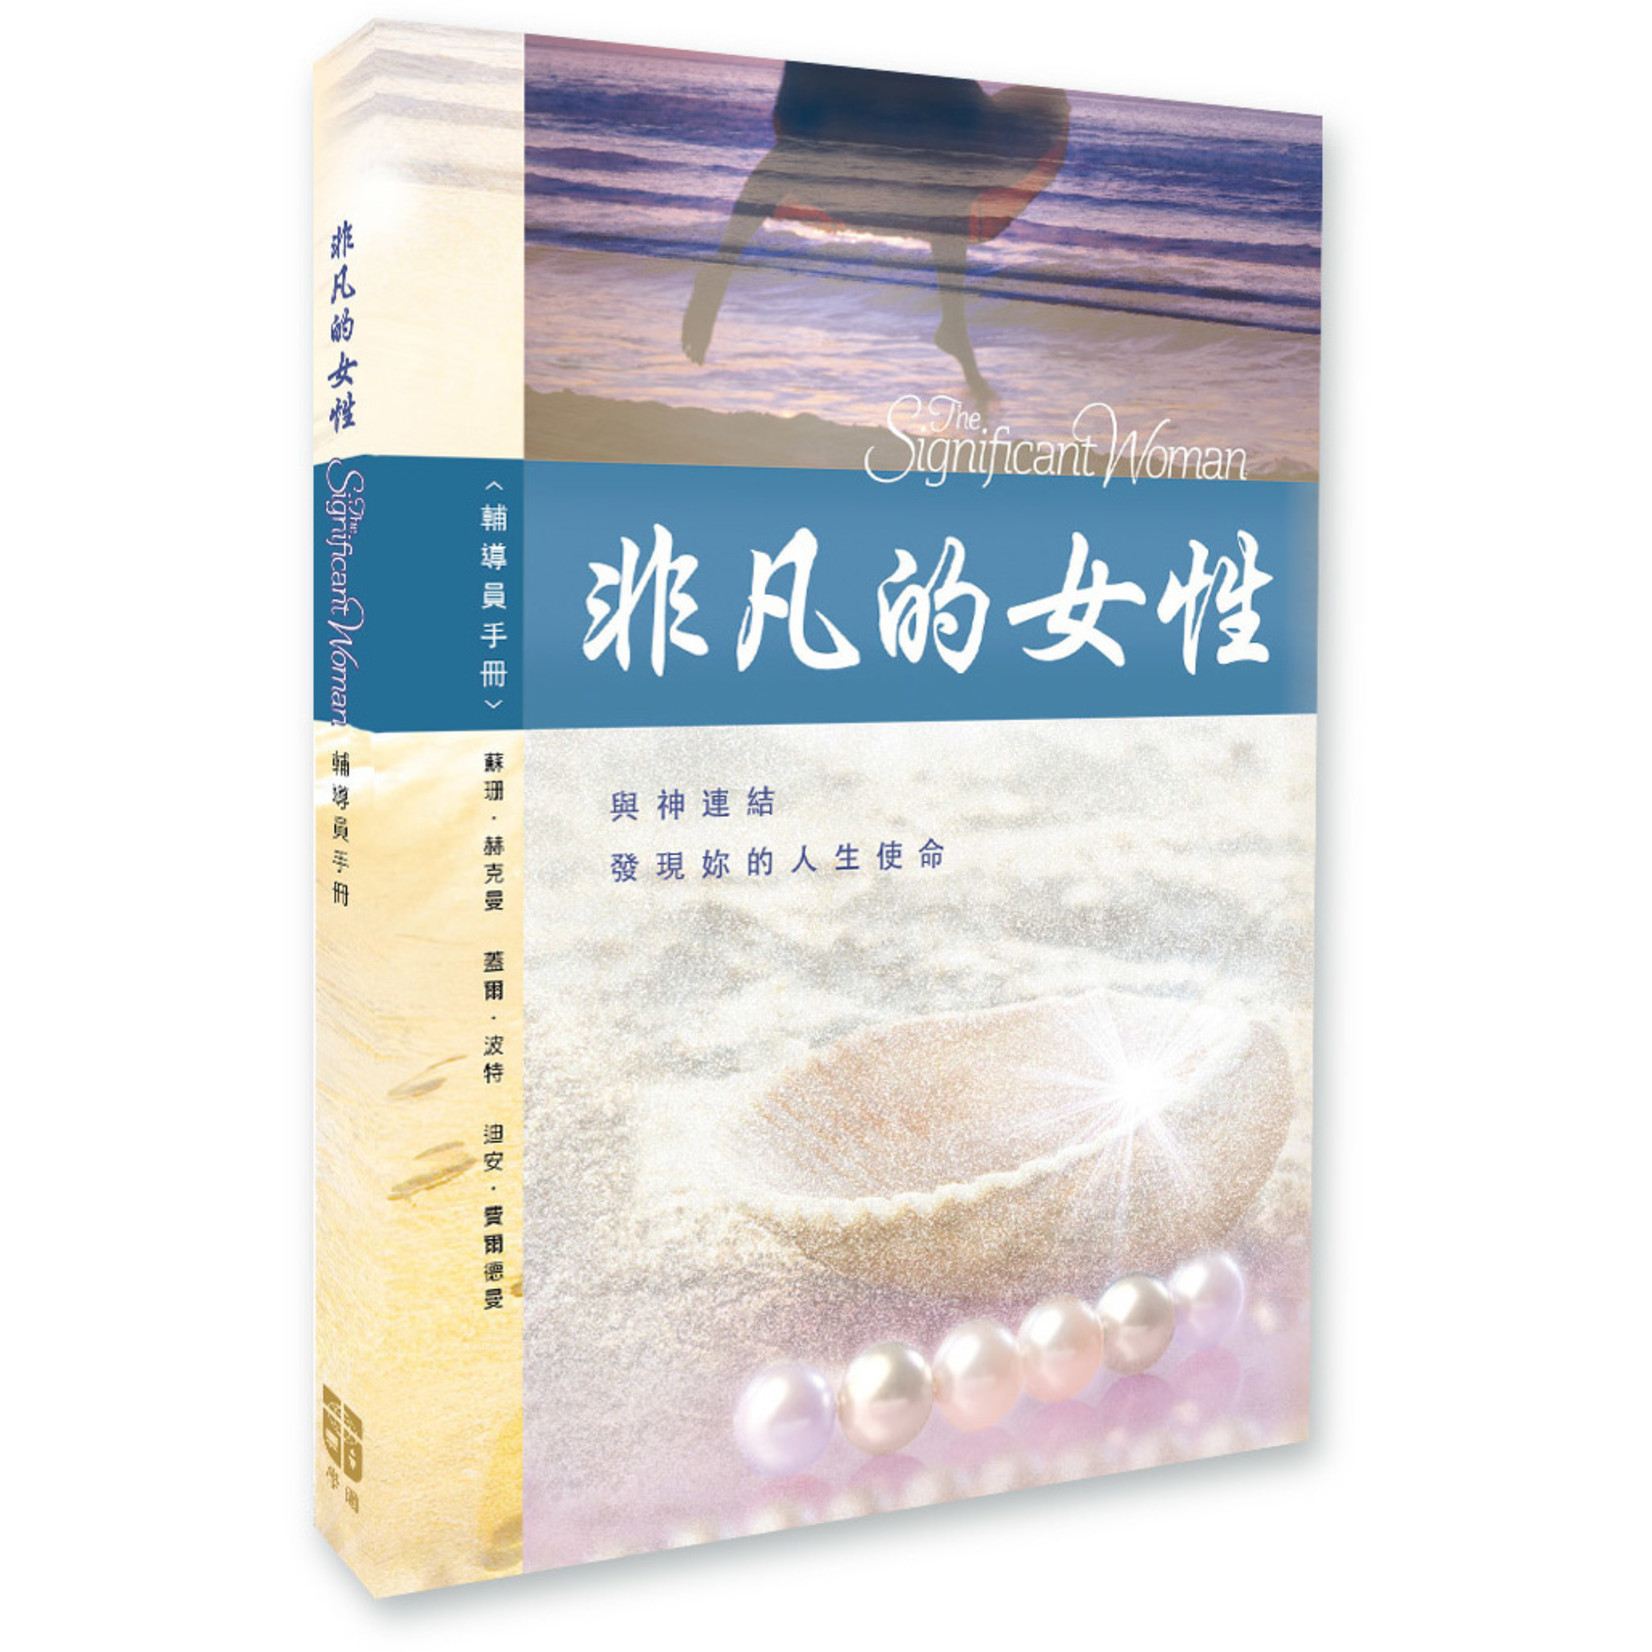 中國學園傳道會 Taiwan Campus Crusade for Christ 非凡的女性：輔導員手冊 The Significant Woman-Facilitator Guide